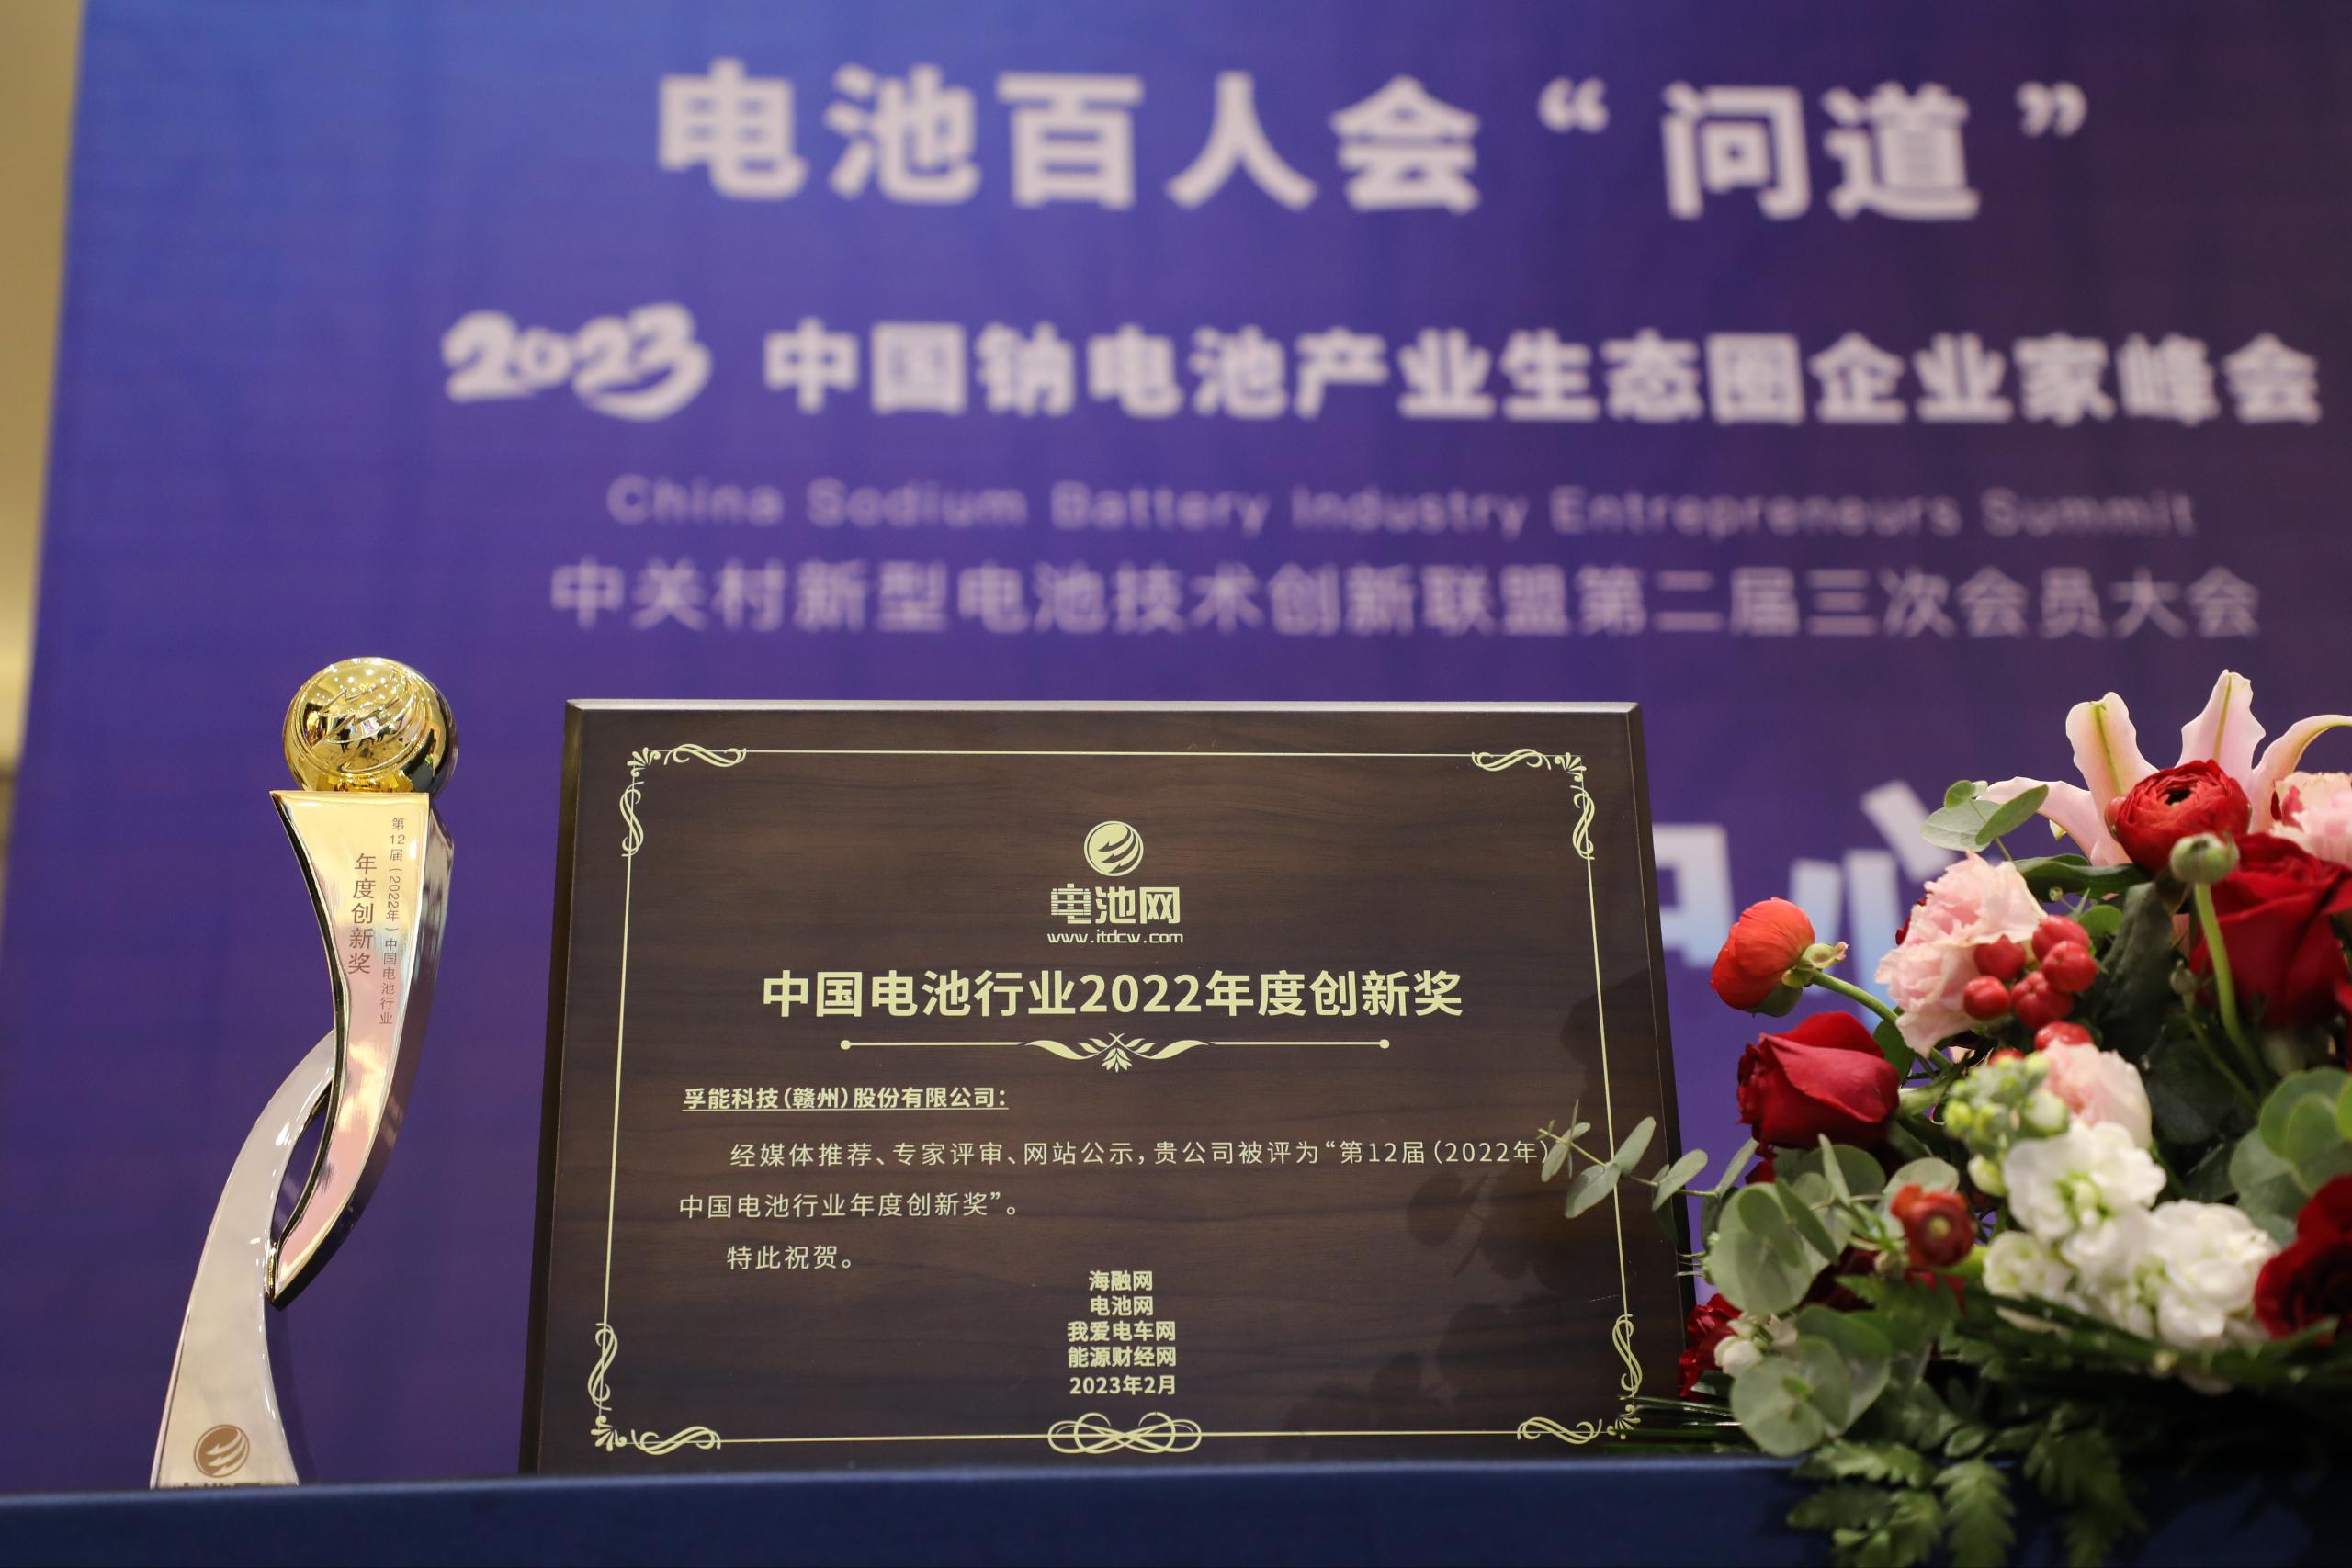 追光榜样力量丨孚能科技荣获中国电池行业年度创新奖